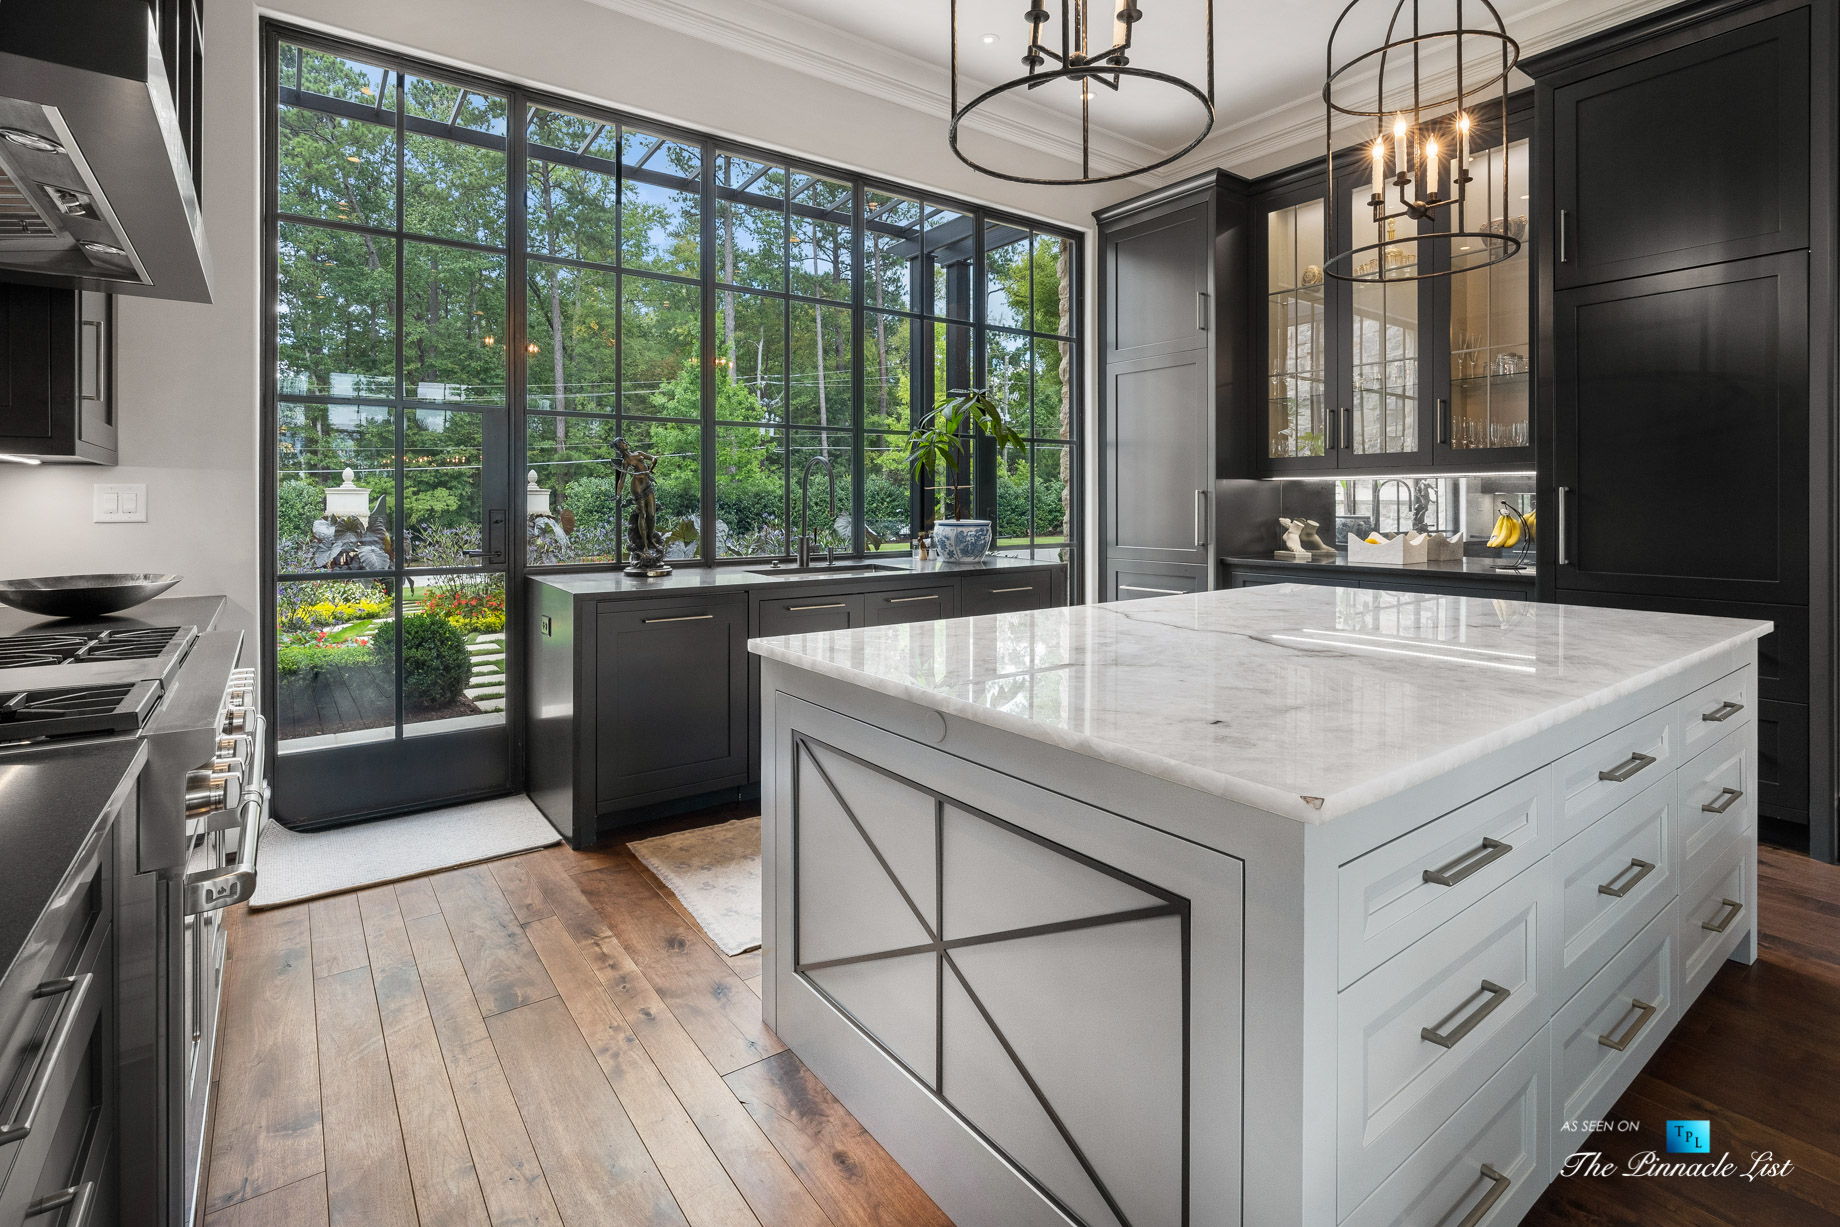 1150 W Garmon Rd, Atlanta, GA, USA - Formal Kitchen with Glass Window View - Luxury Real Estate - Buckhead Estate Home